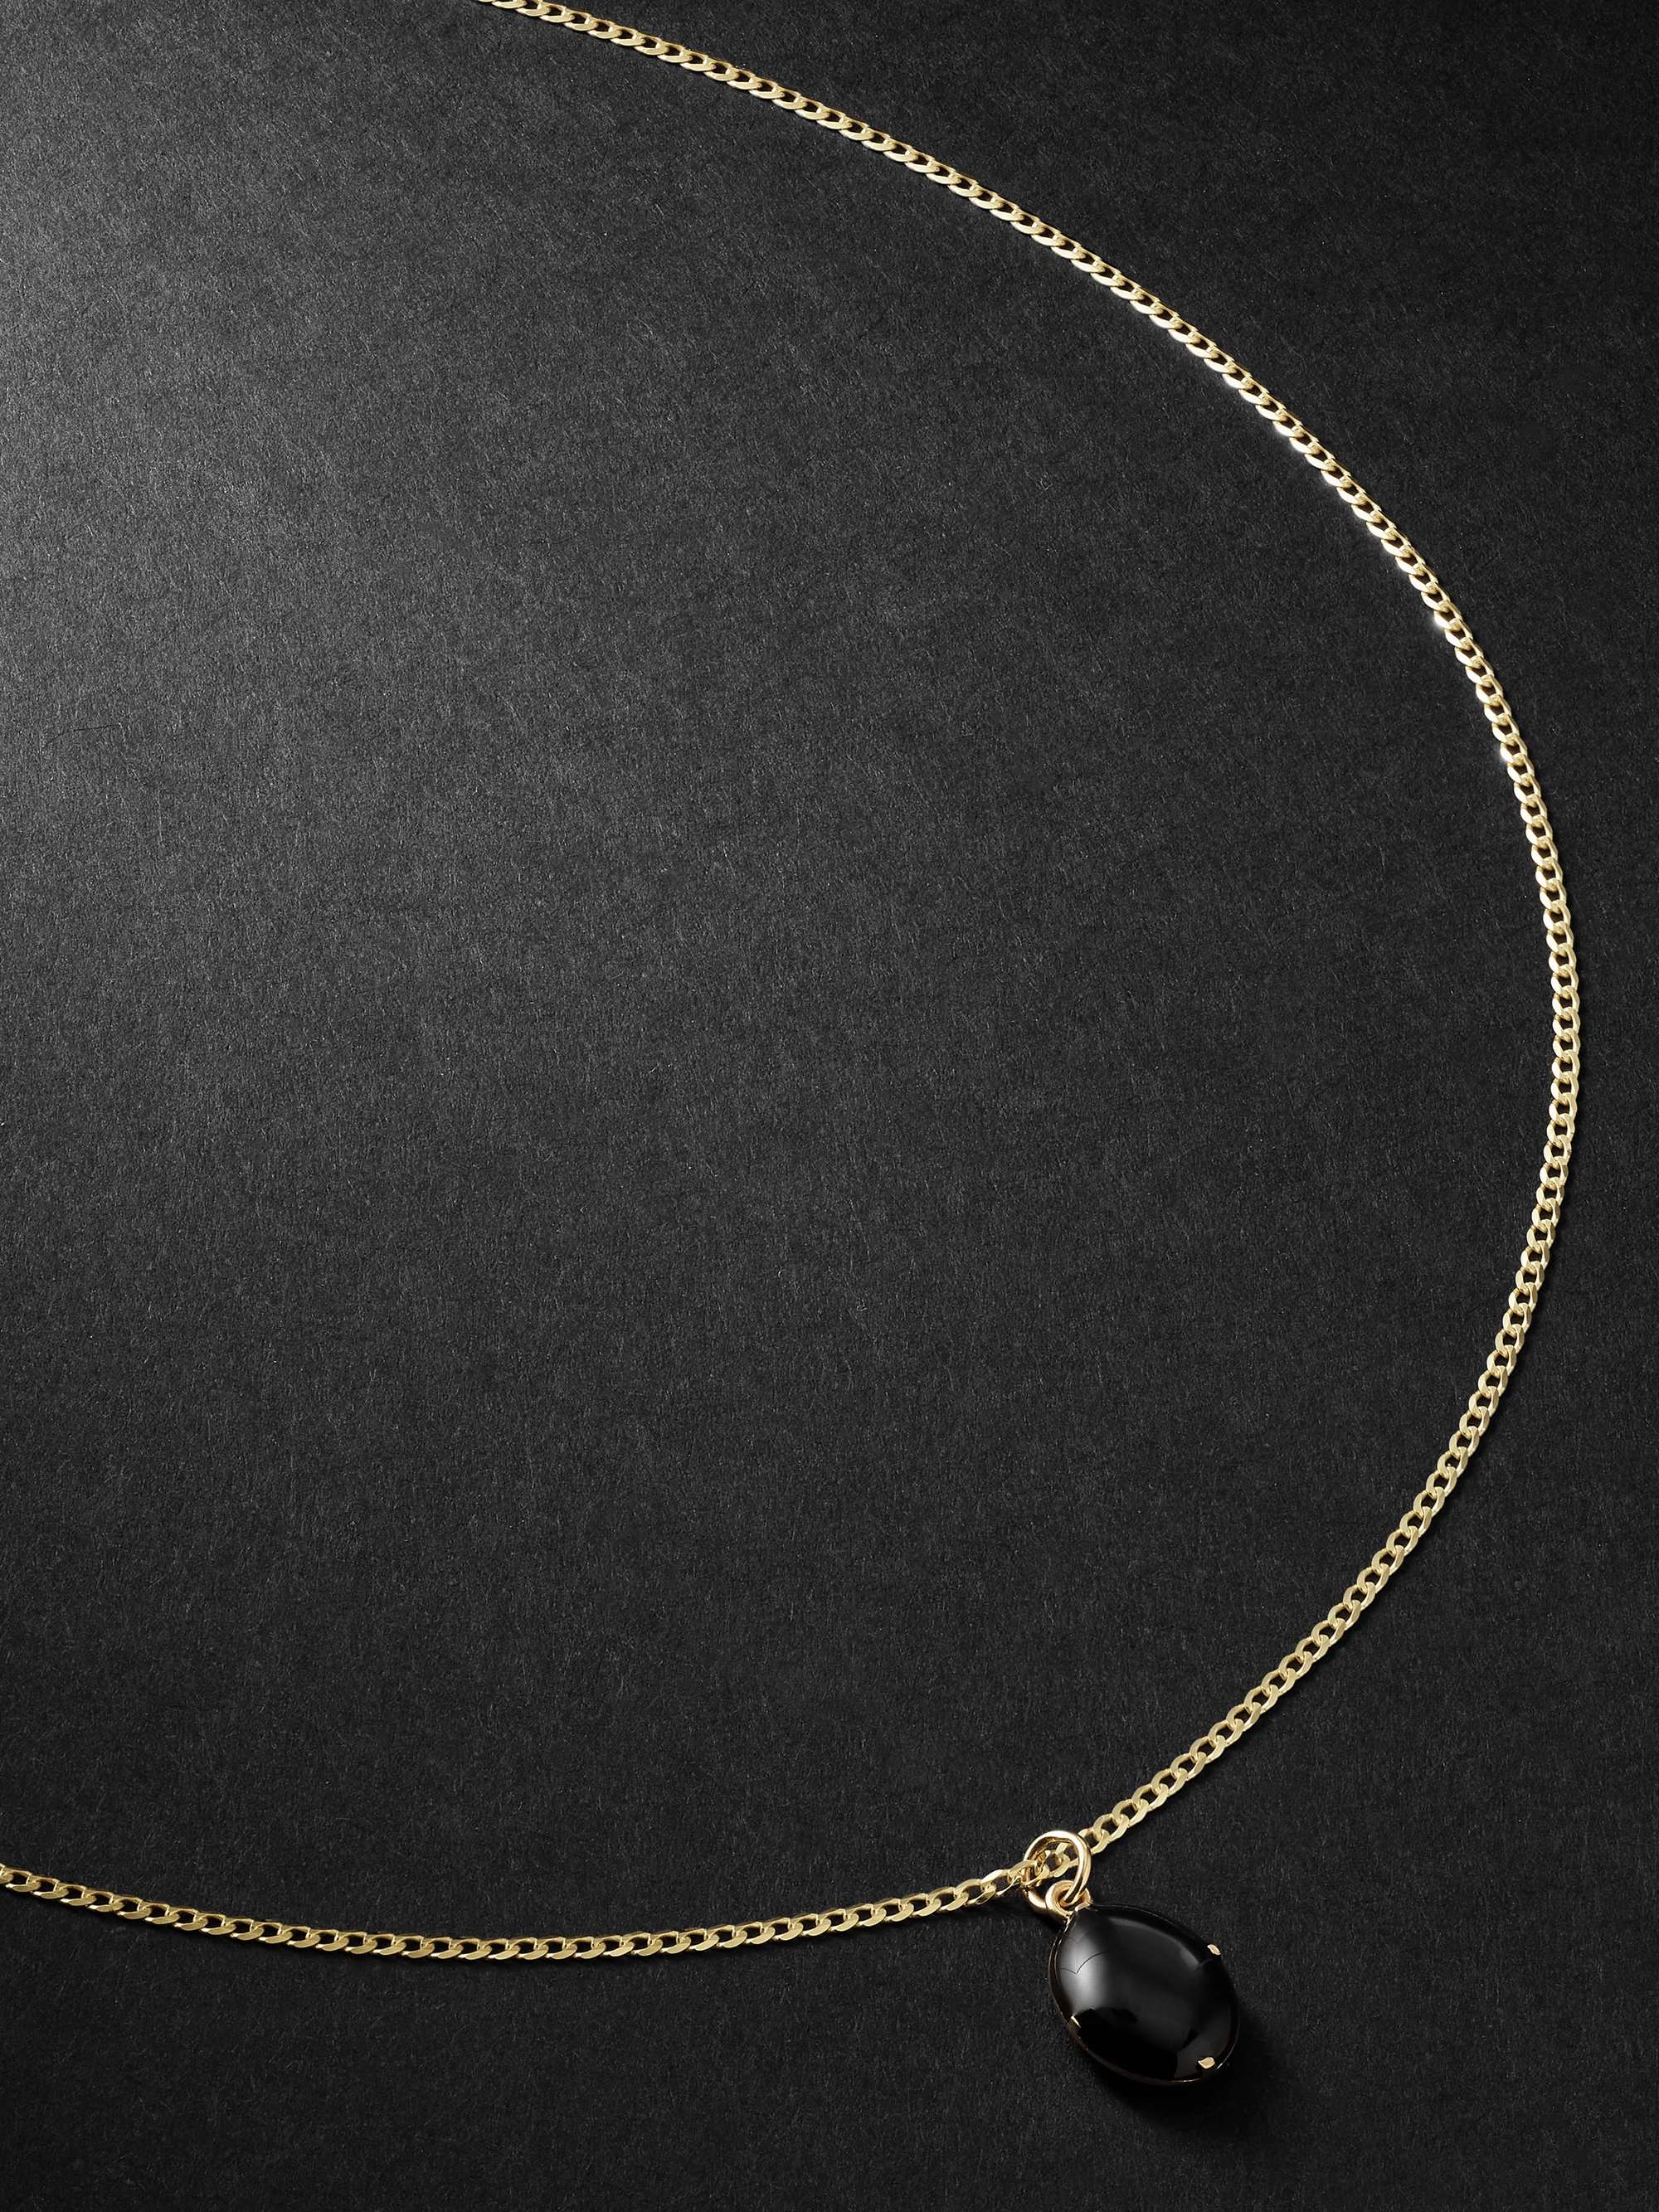 MIANSAI Gold and Enamel Pendant Necklace